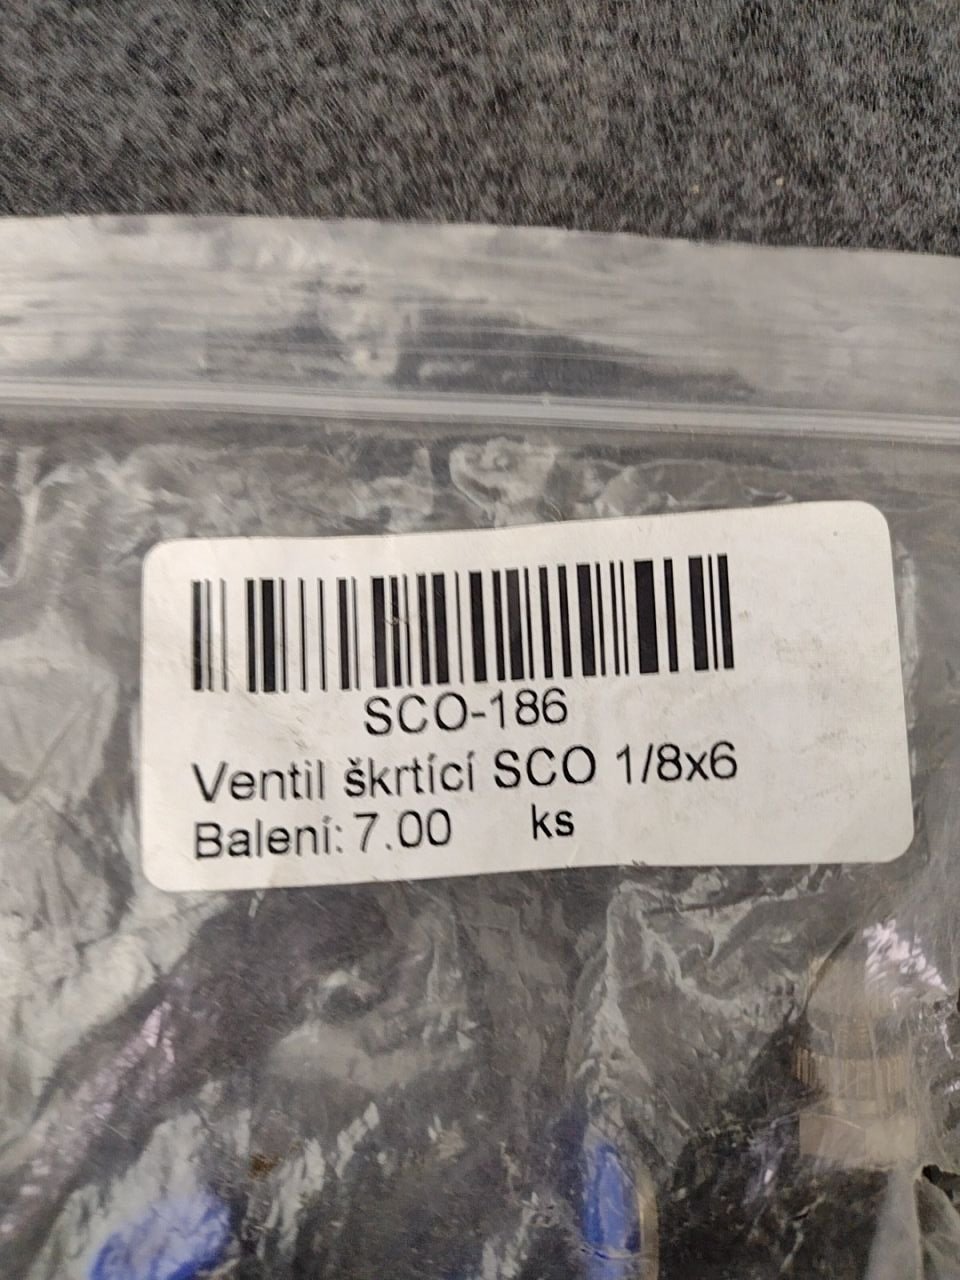 Škrtící ventil (SCO 1/8x6), spojovací materiál  